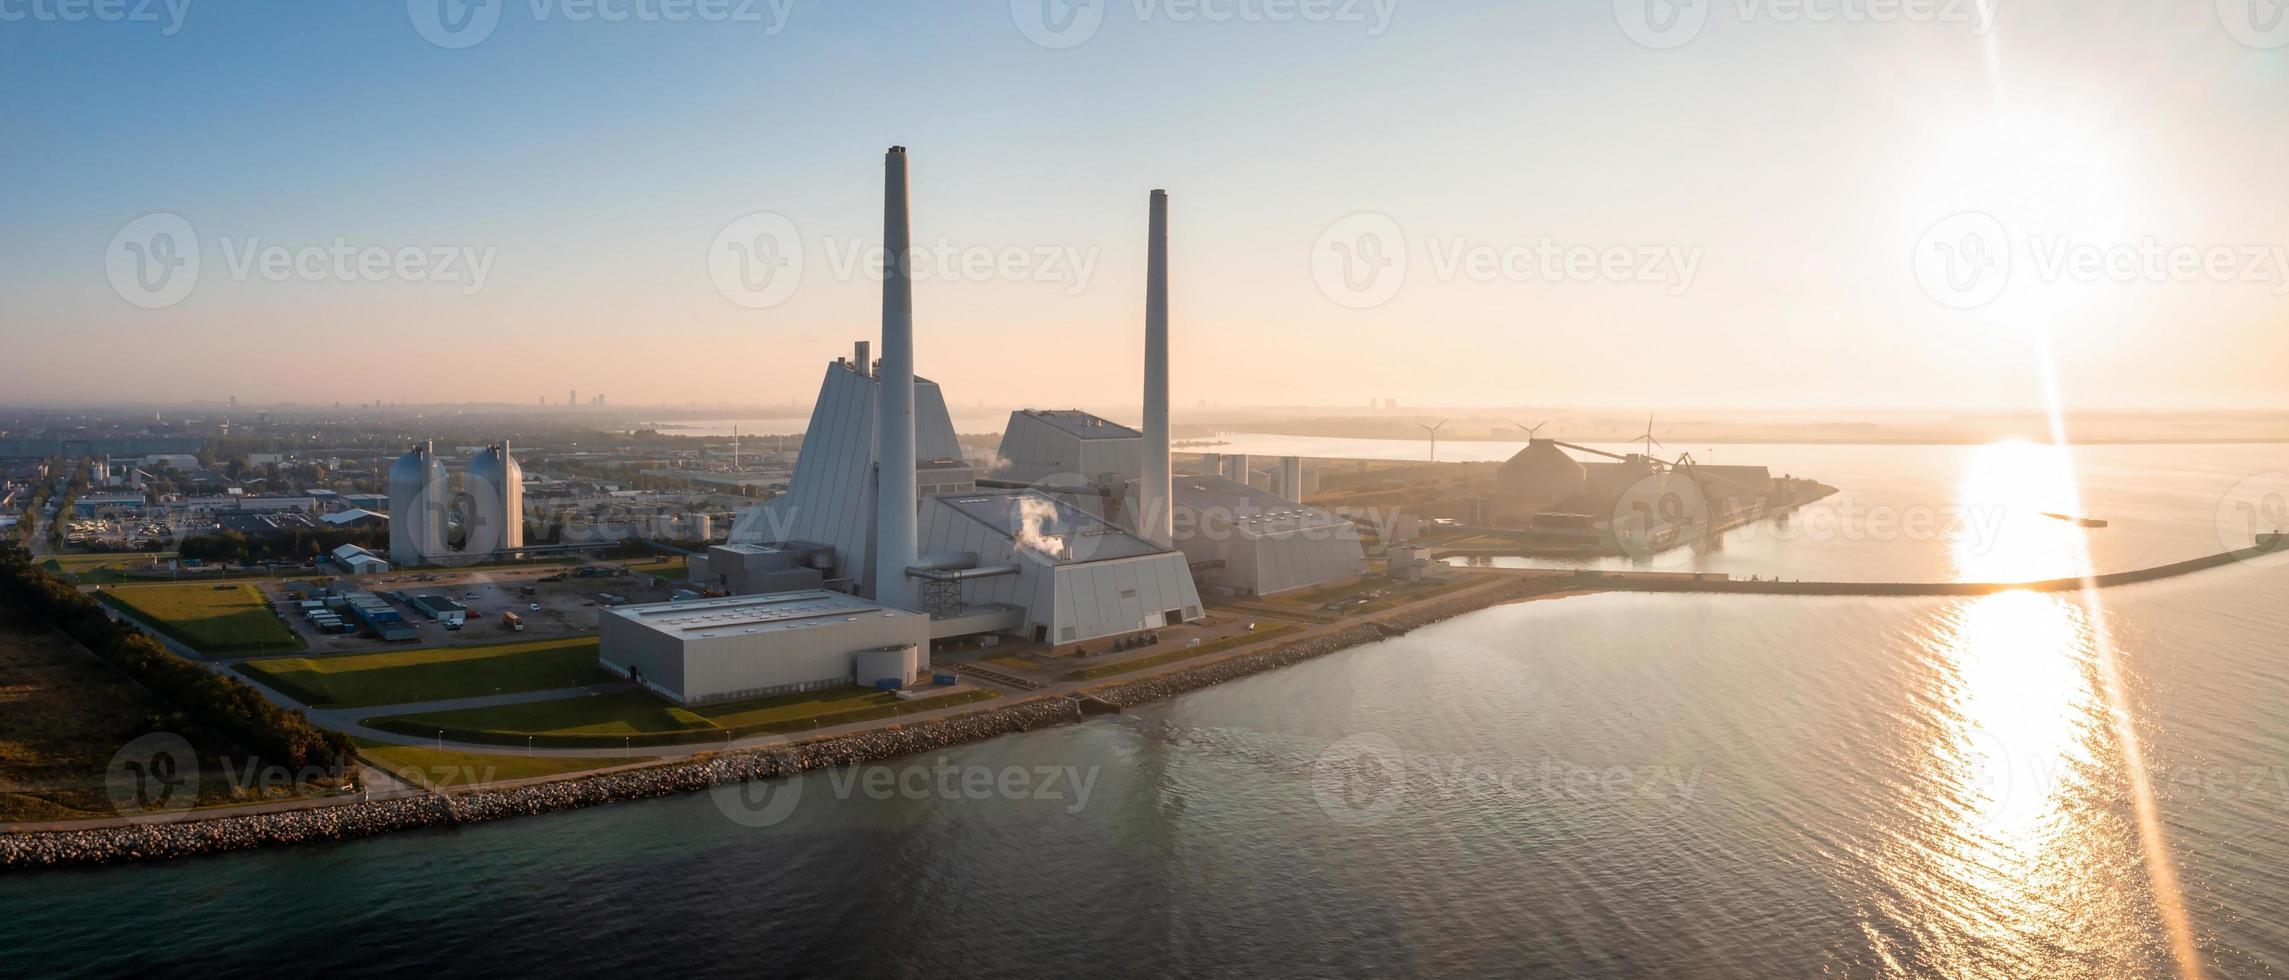 vista aérea da central elétrica. uma das usinas de energia mais bonitas e ecológicas do mundo. esg energia verde. foto